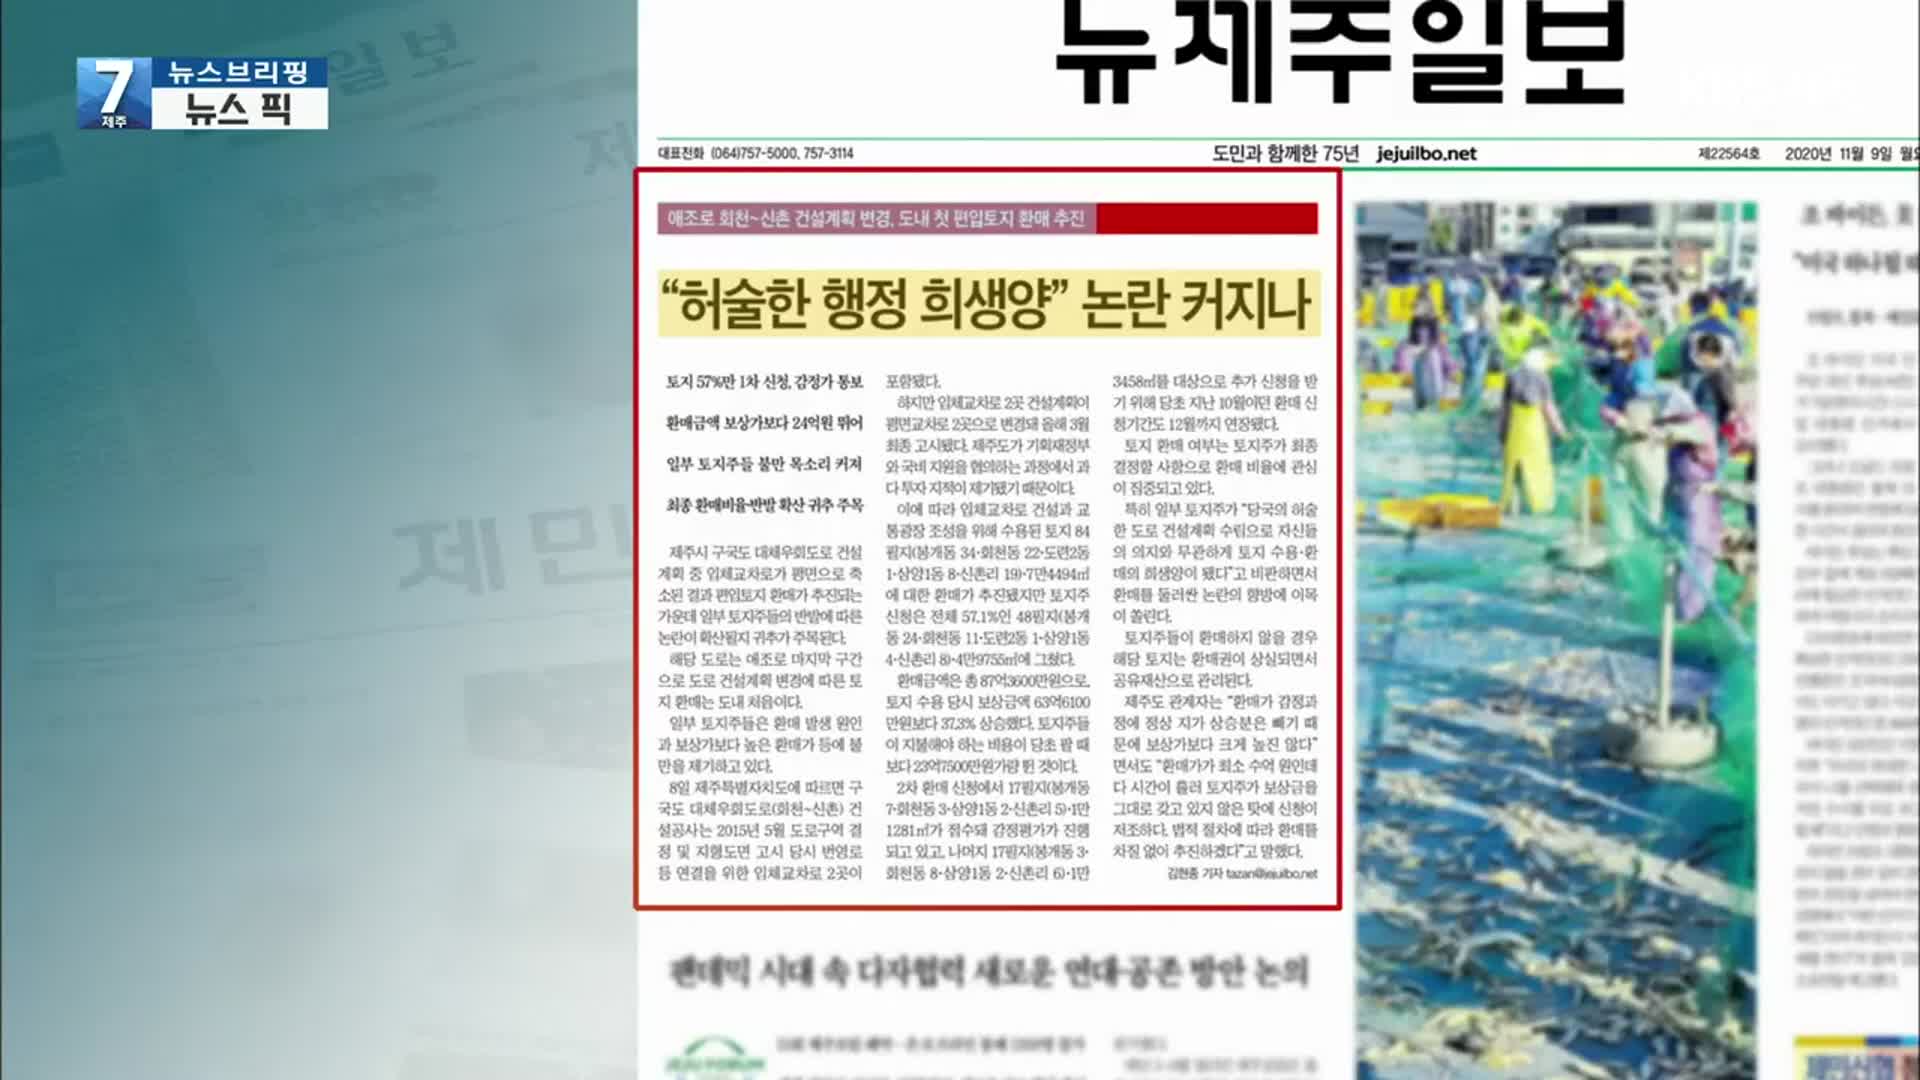 [뉴스브리핑] “허술한 행정 희생양” 논란 커지나 외